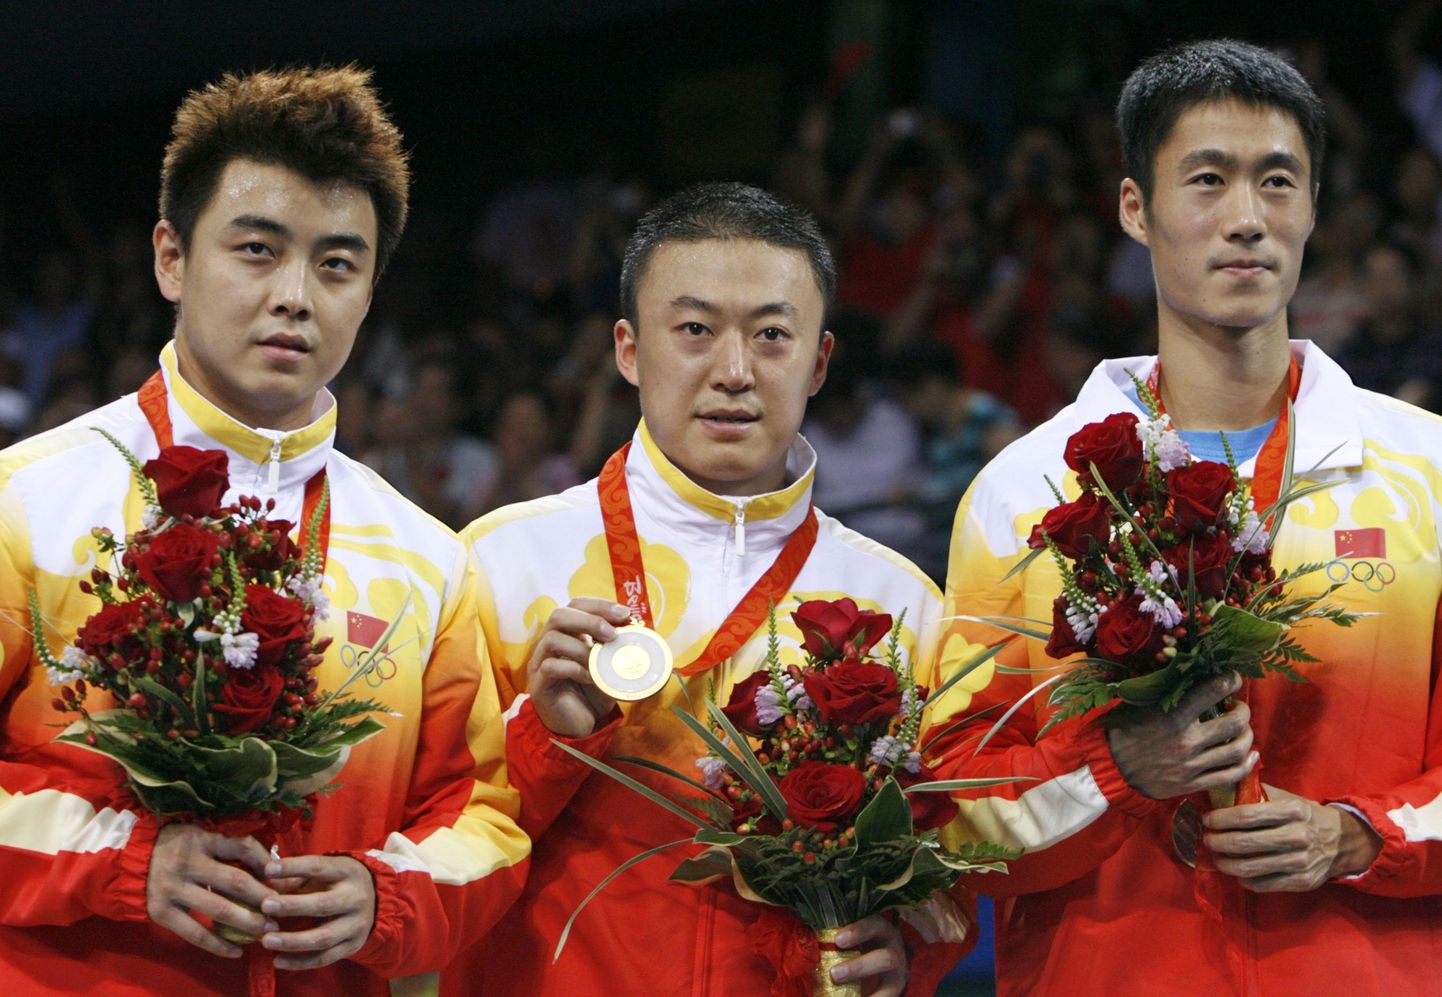 Hiina võttis meeste lauatennise turniiril kolmikvõidu.